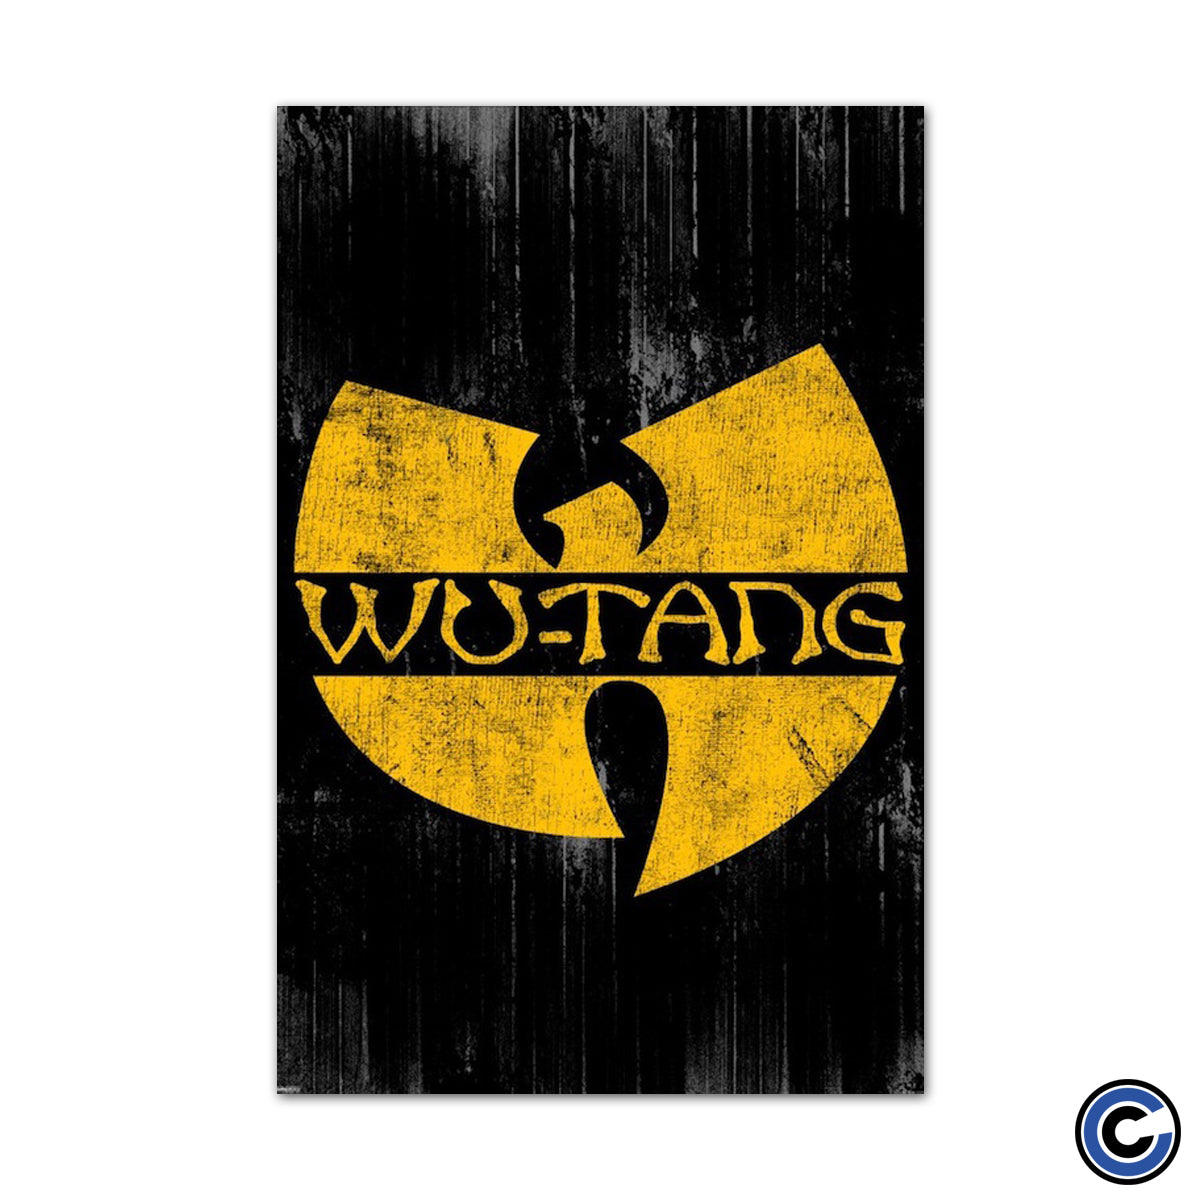 Wu-Tang Clan "Logo" Poster